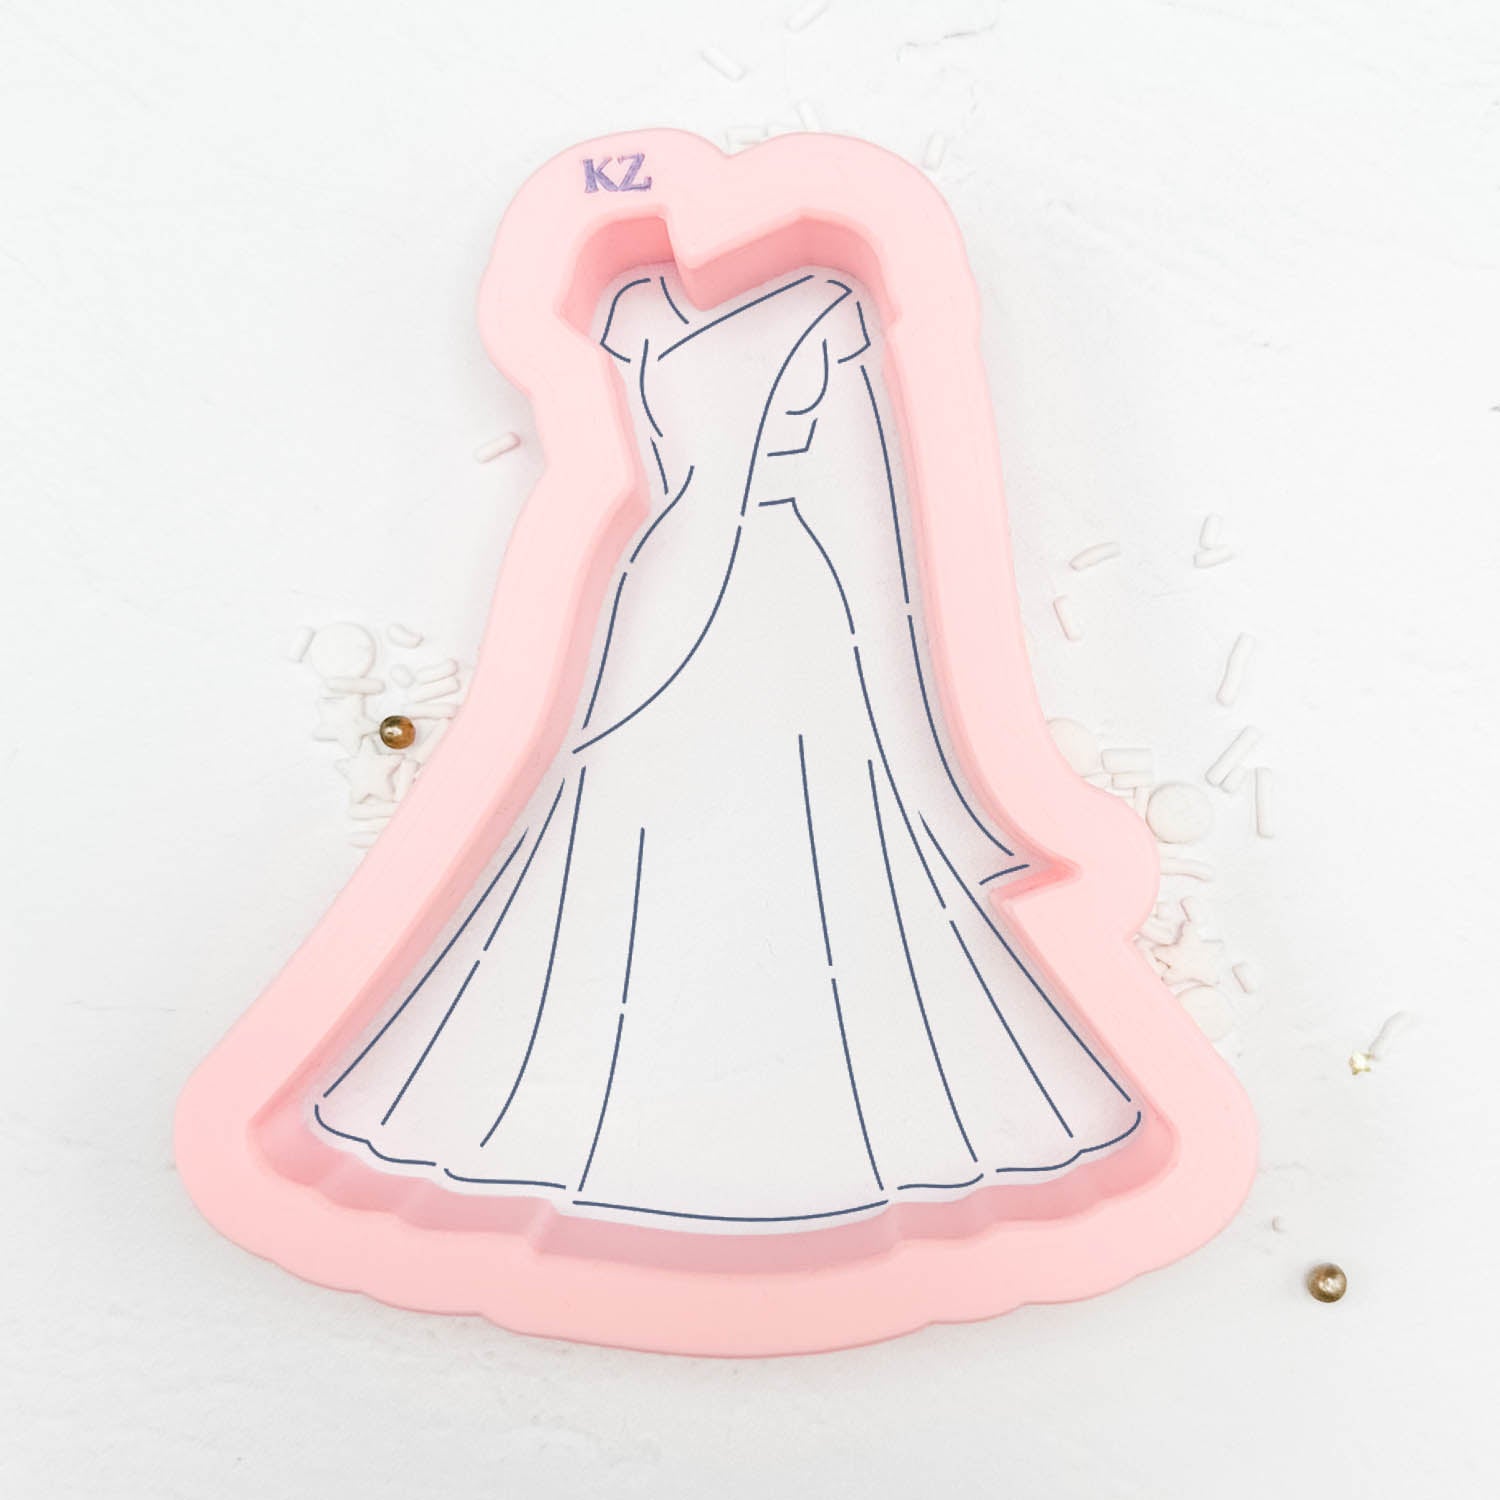 The Priya Wedding Dress Cutter/Stencil